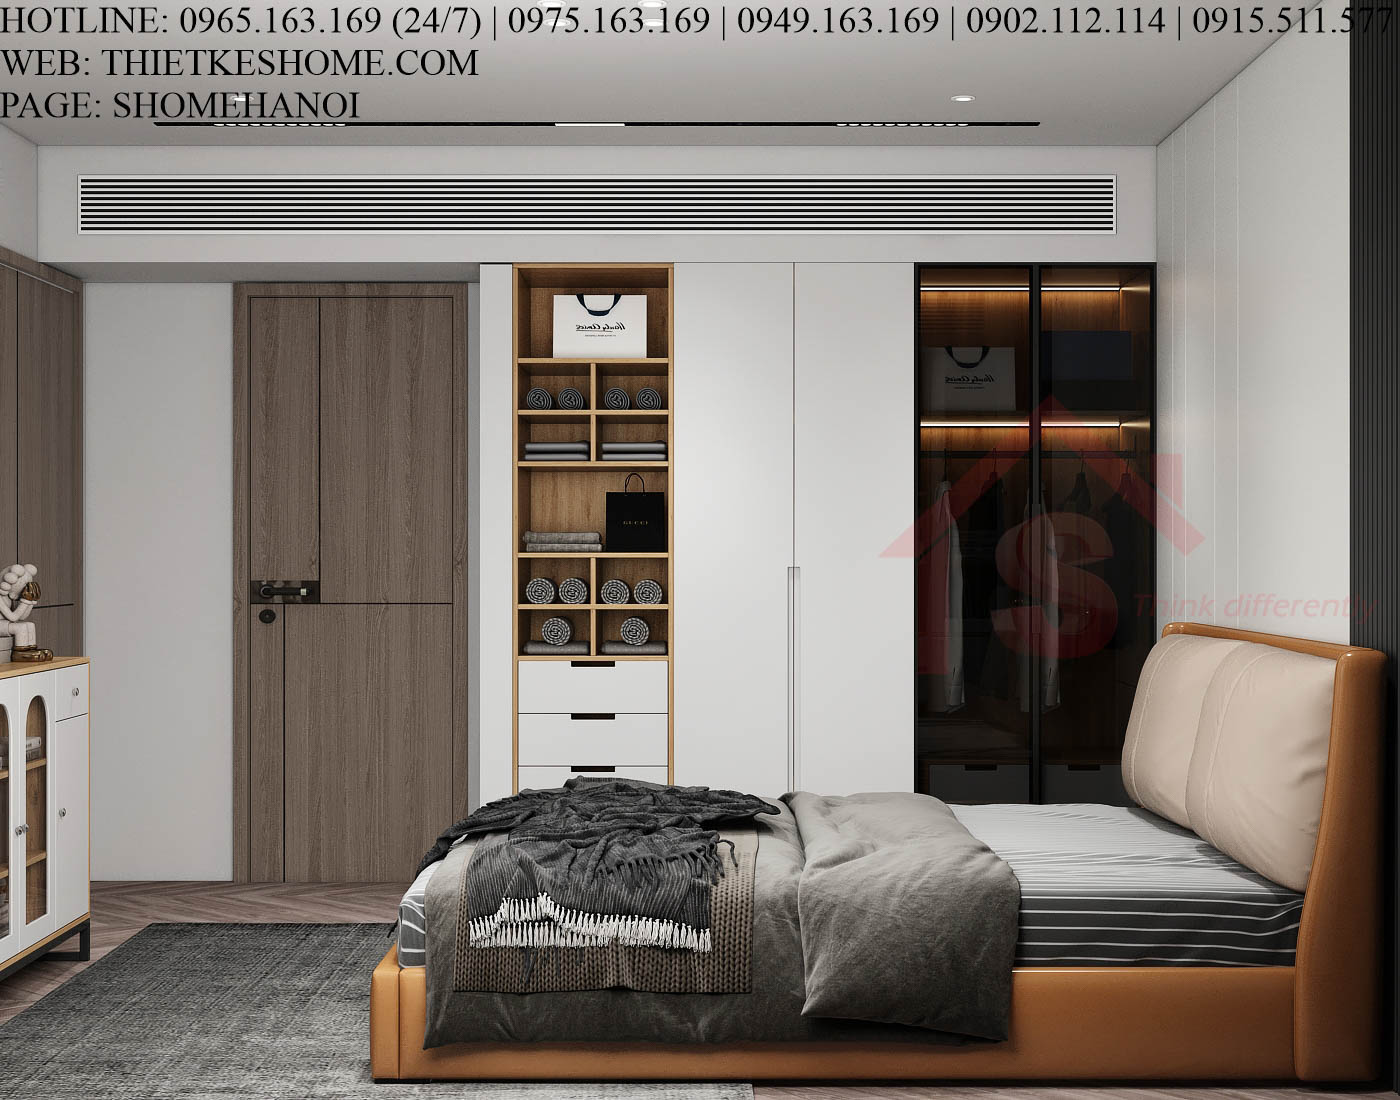 S HOME Combo mẫu nội thất phòng ngủ đẹp hiện đại tiện dụng SHOME6822